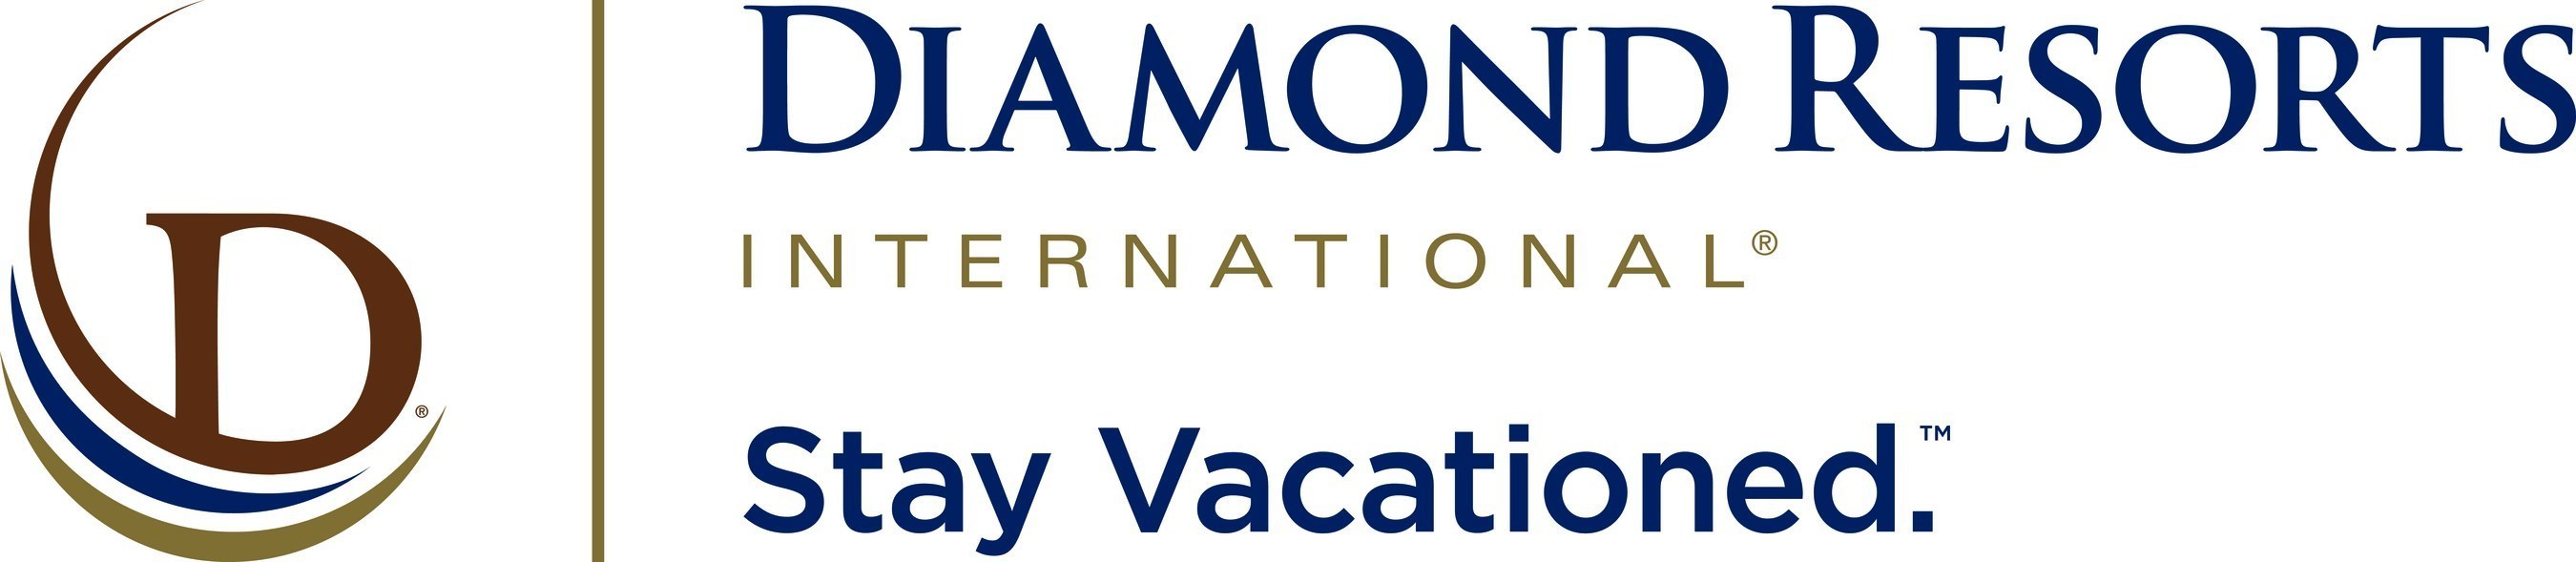 Diamond Resorts International(R), Las Vegas, Nevada